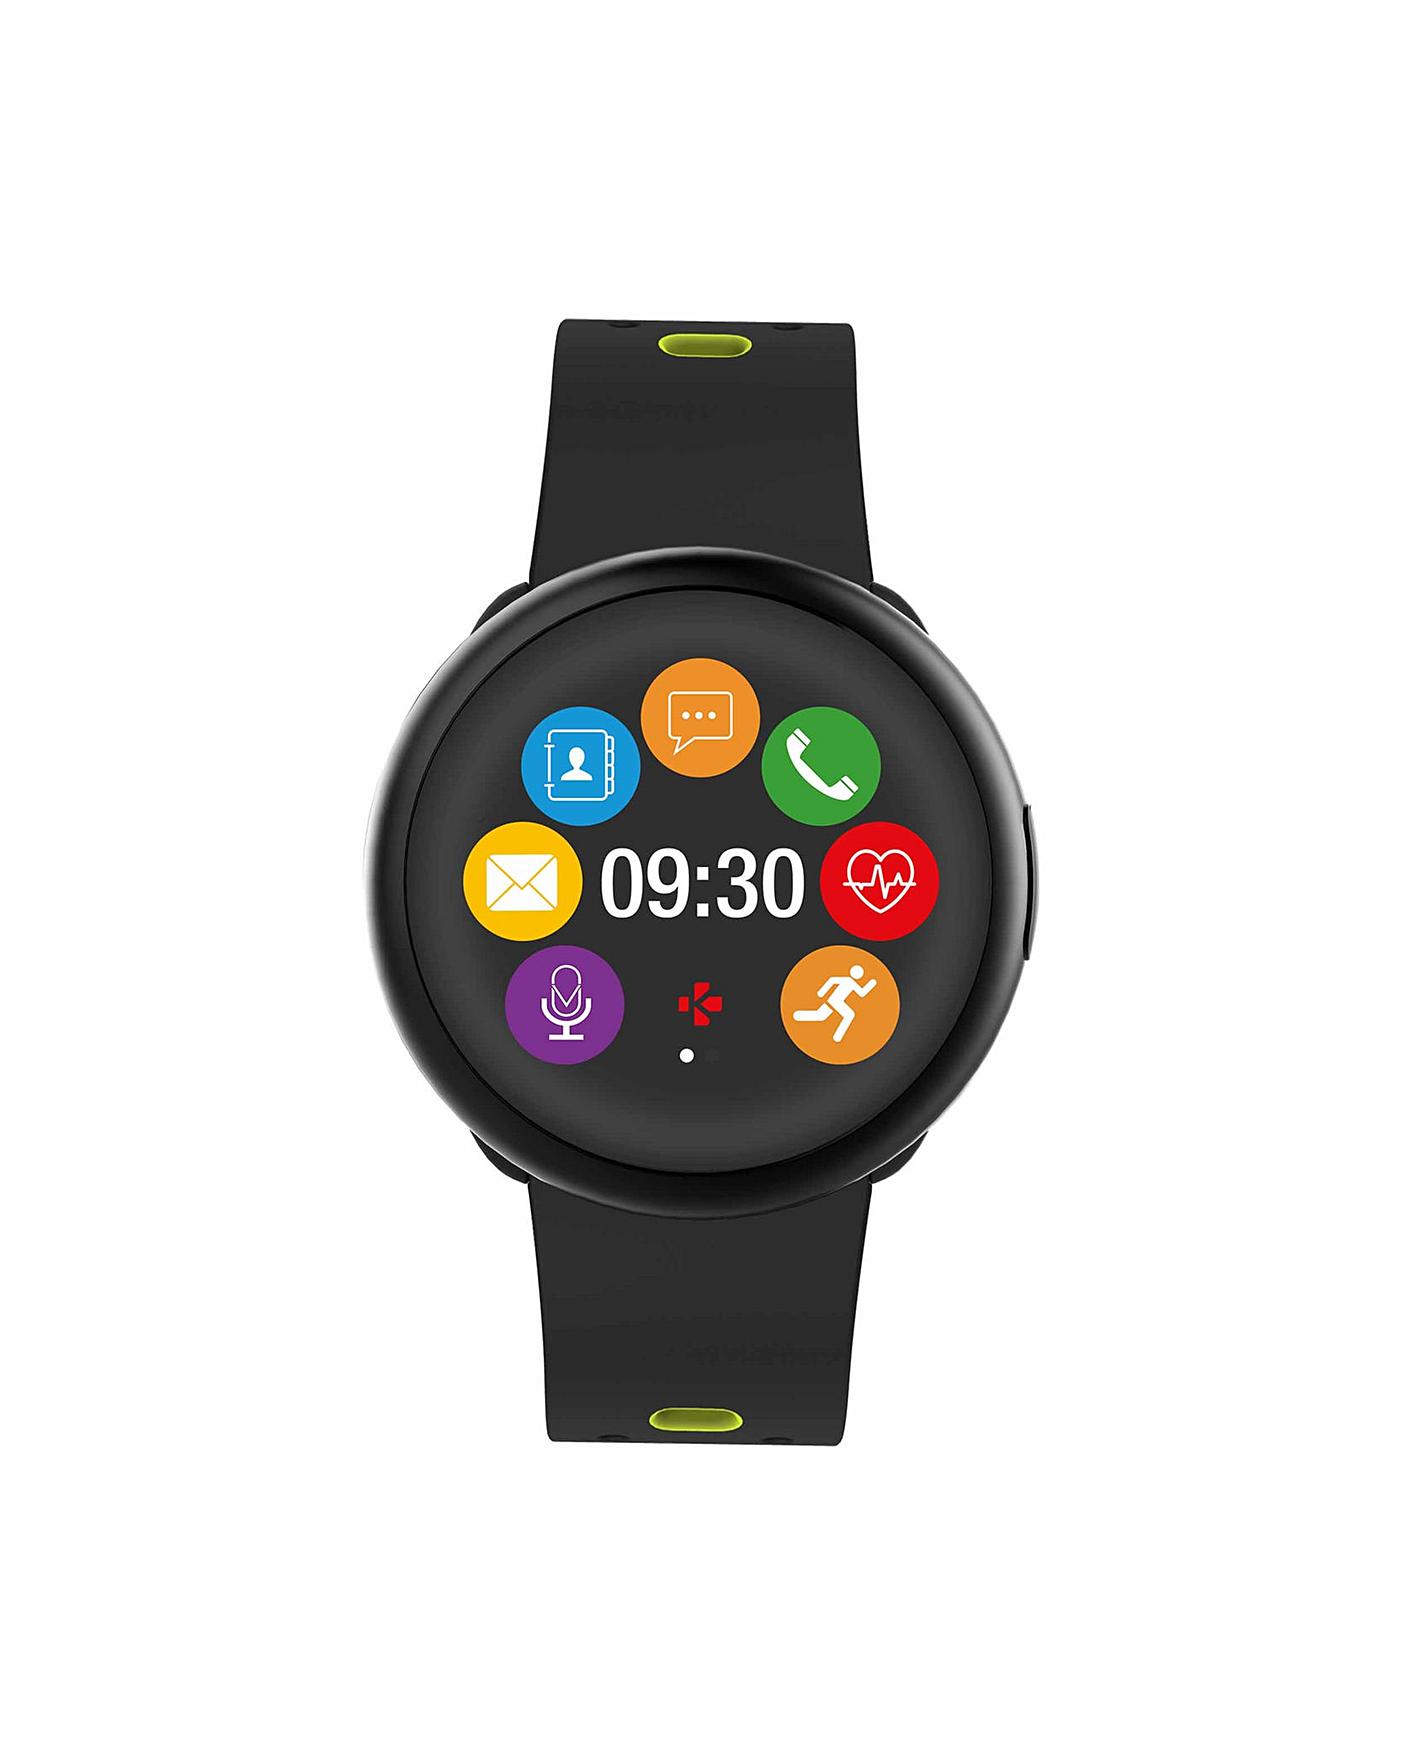 mykronoz smartwatch zeround 2 hr premium